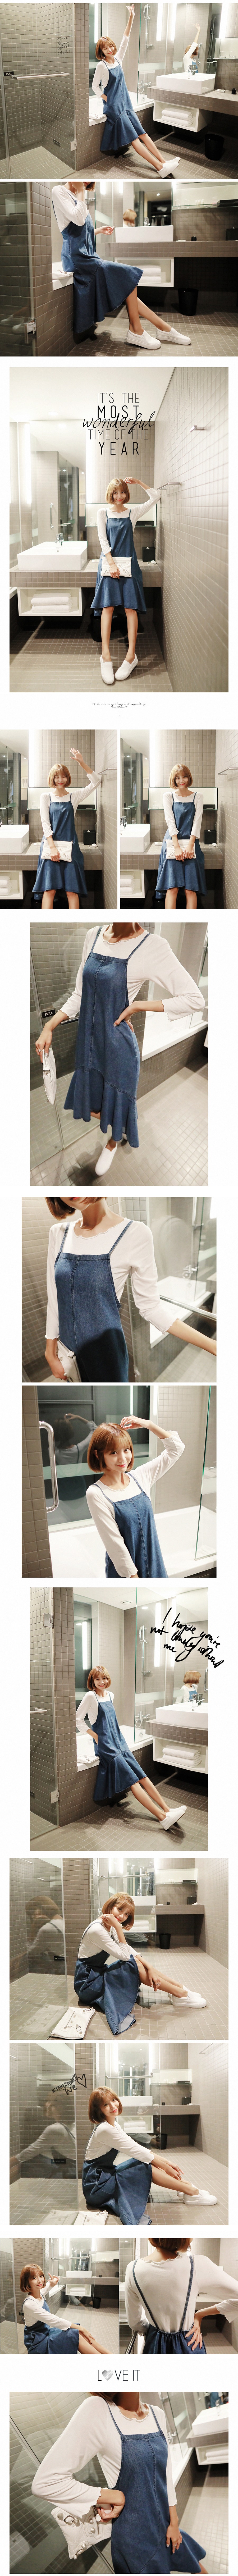 [Autumn New Set] Tie-Shoulder Denim Dress and White Soft T-Shirt 2 Pieces Set One Size(S-M)